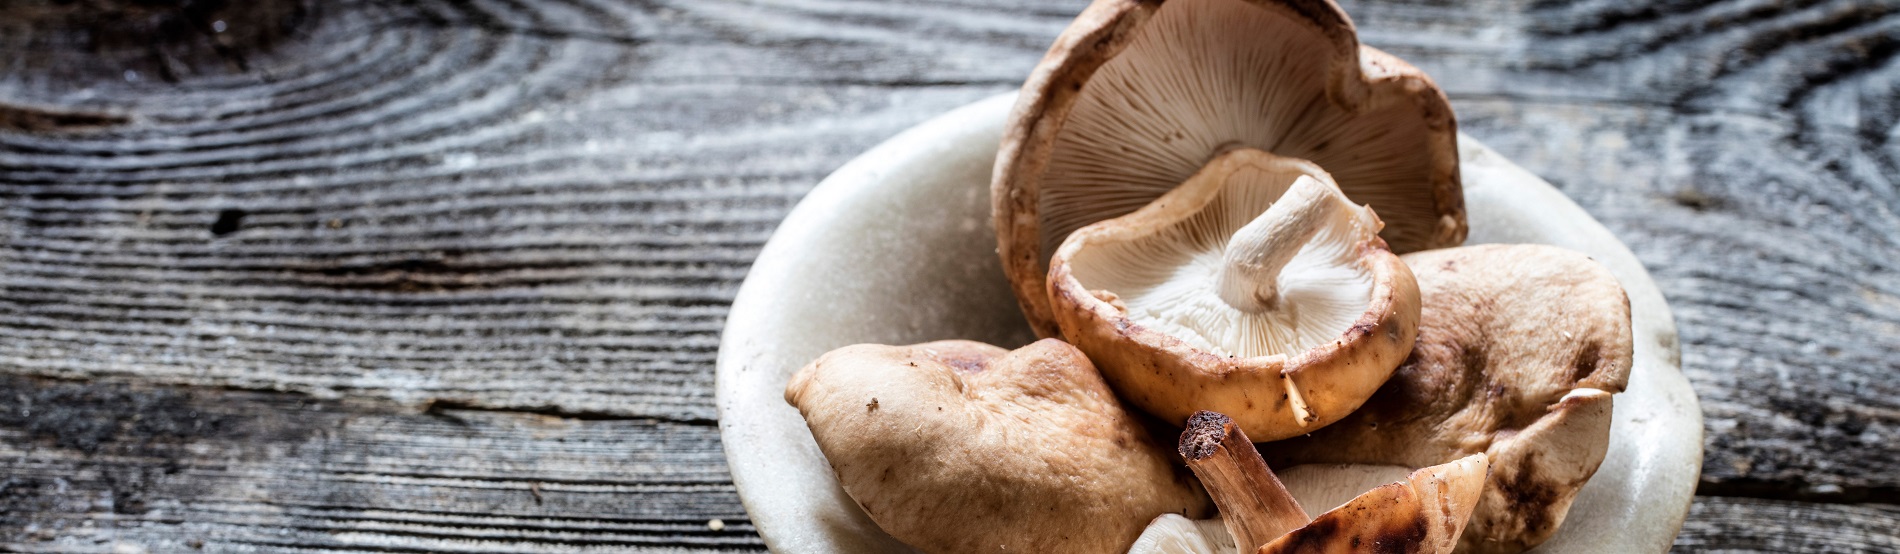 shitake mushrooms as medicinal mushrooms with health benefits